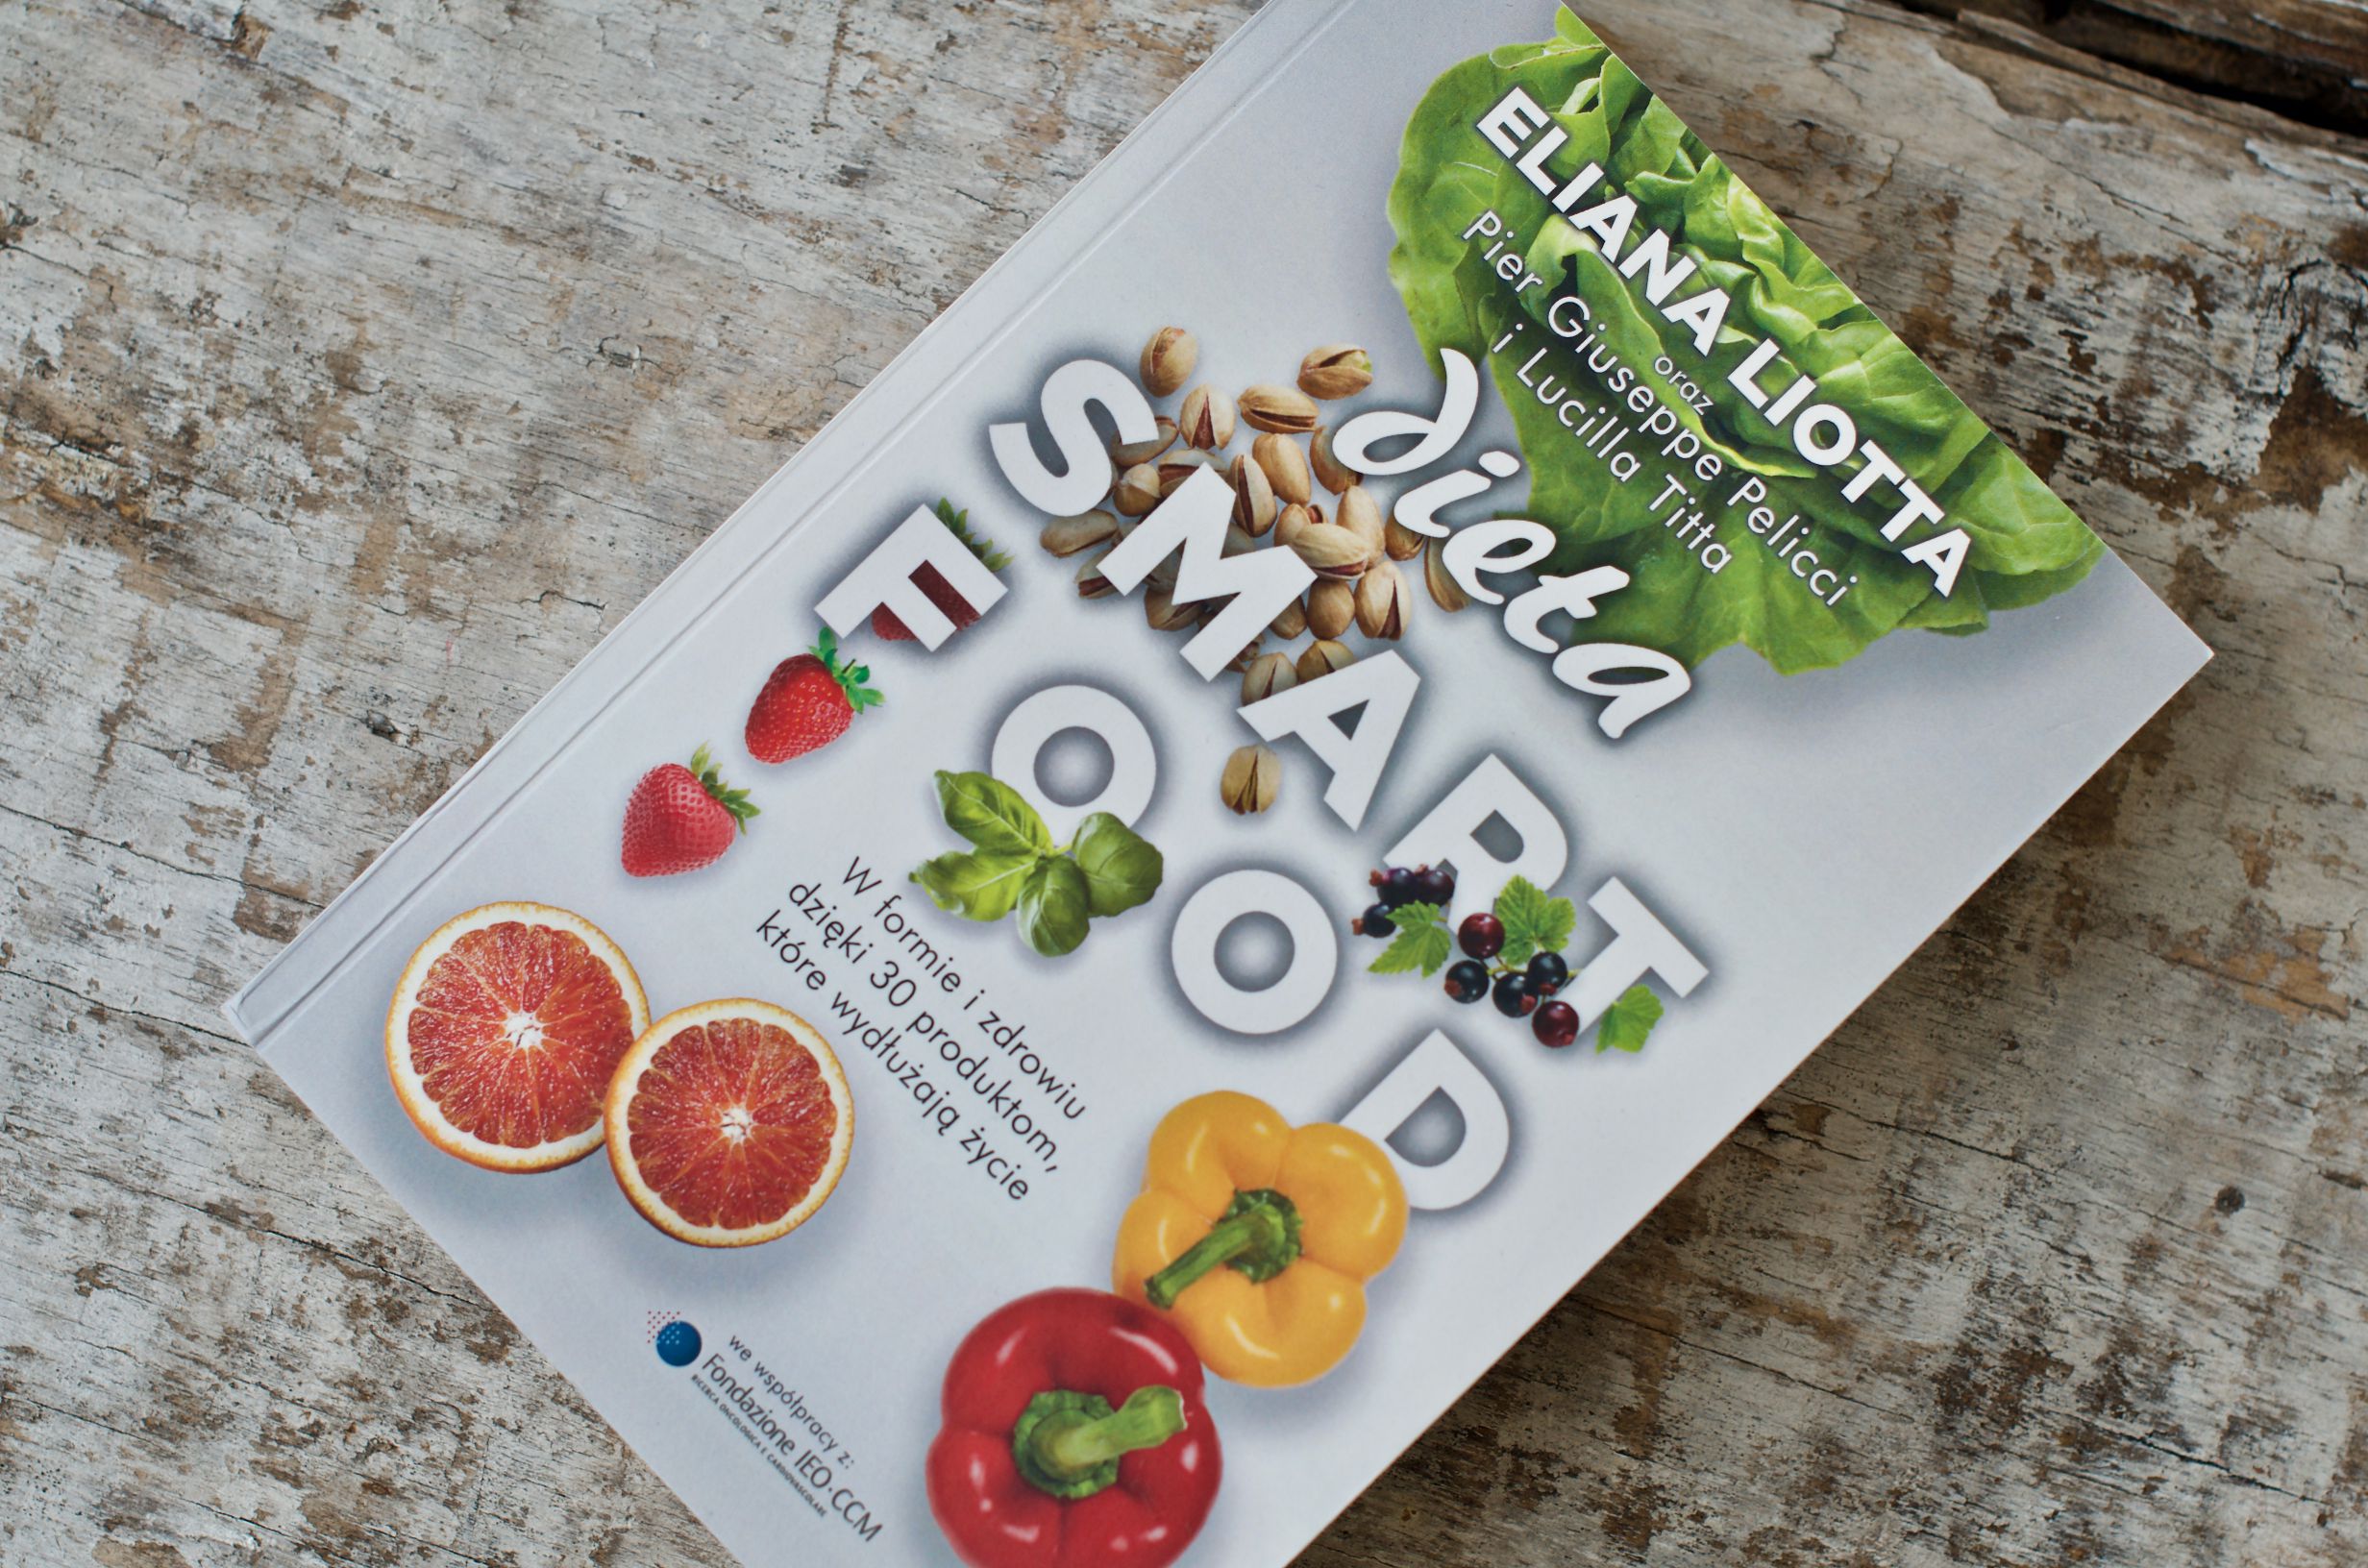 dieta smartfood książka